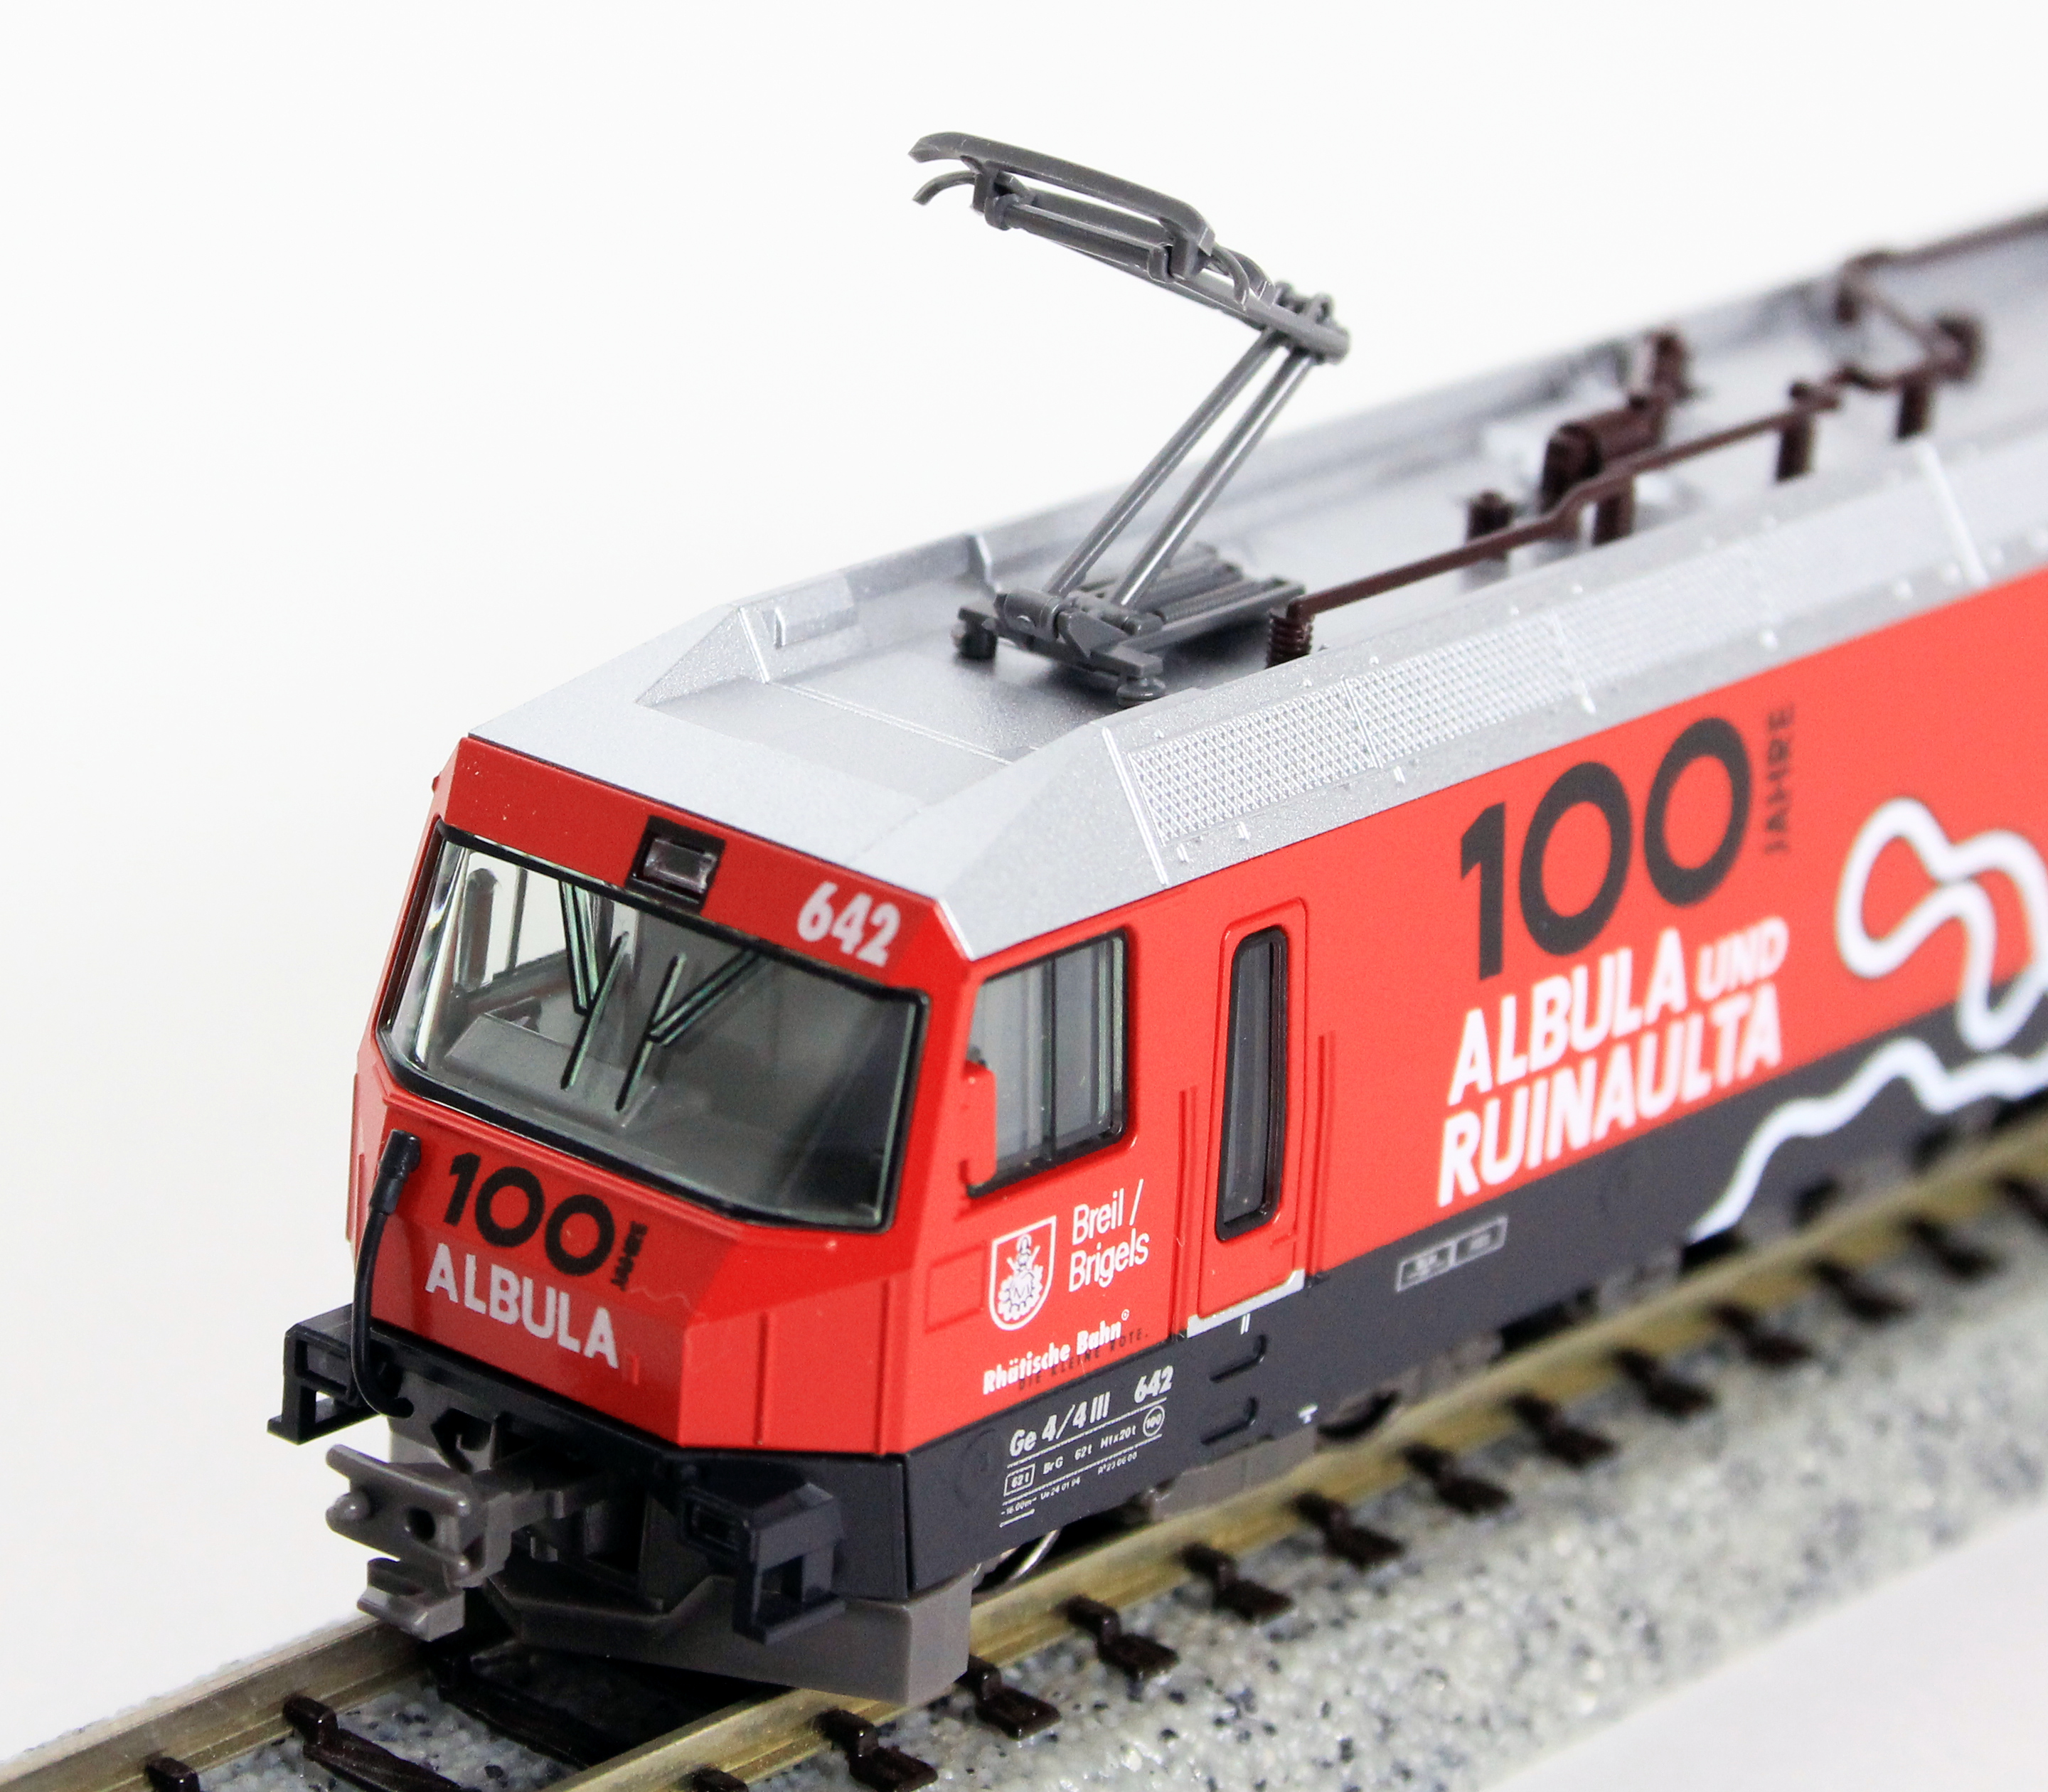 カトー 3101 アルプスの機関車Ge4/4 Ⅲ<アルブラ線100周年ラッピング 